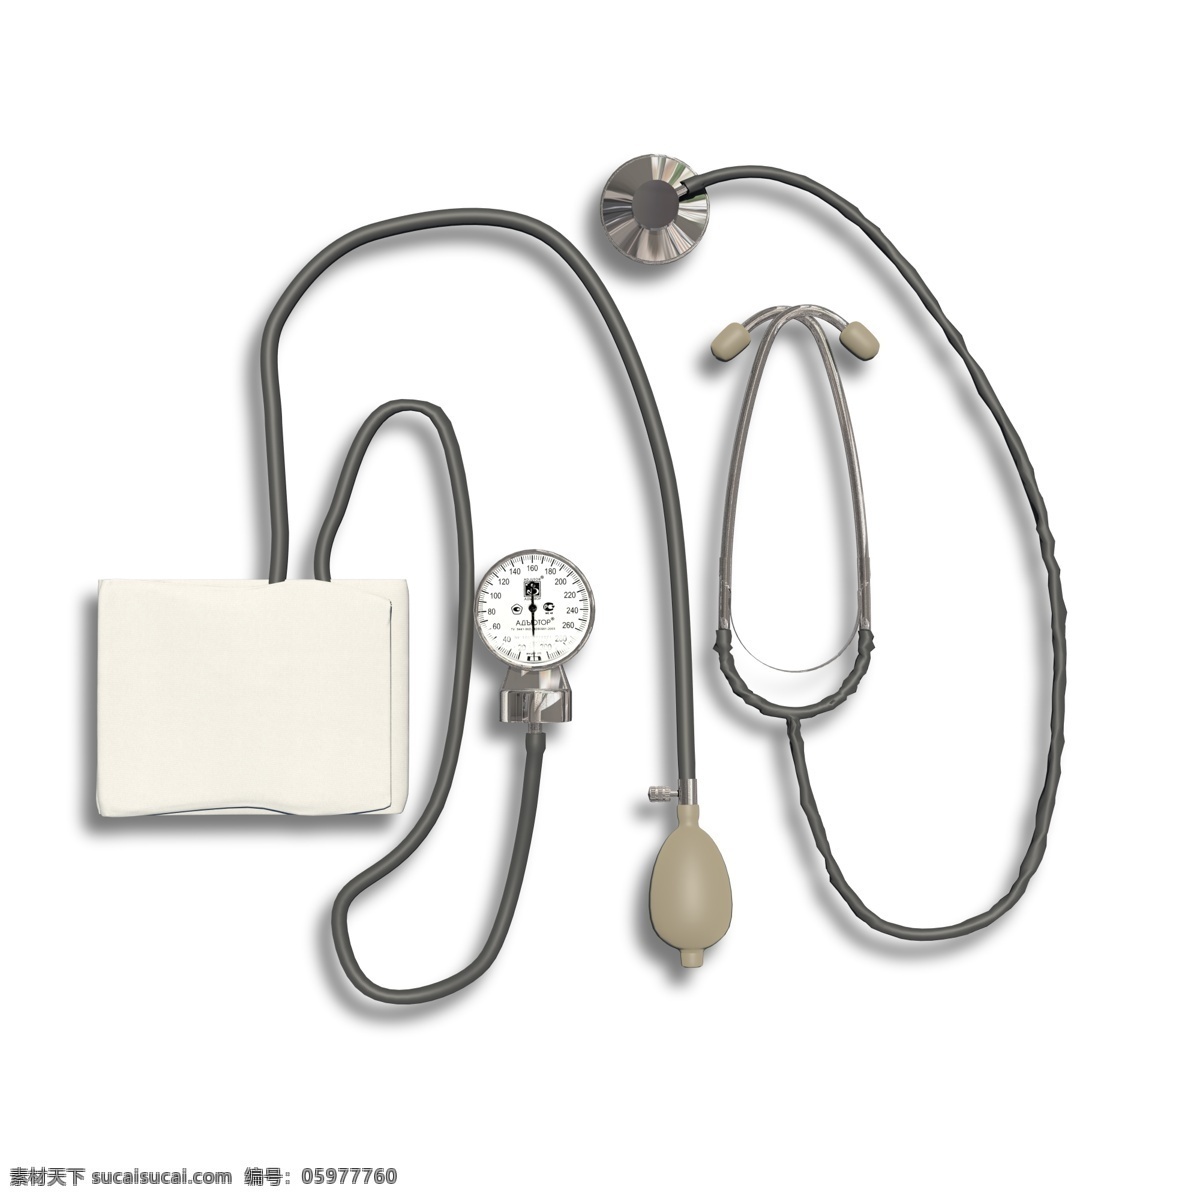 医疗器械 听诊器 血压 仪 血压仪 医生用品 医院用品 测量血压 听心率 听诊 低血压 高血压